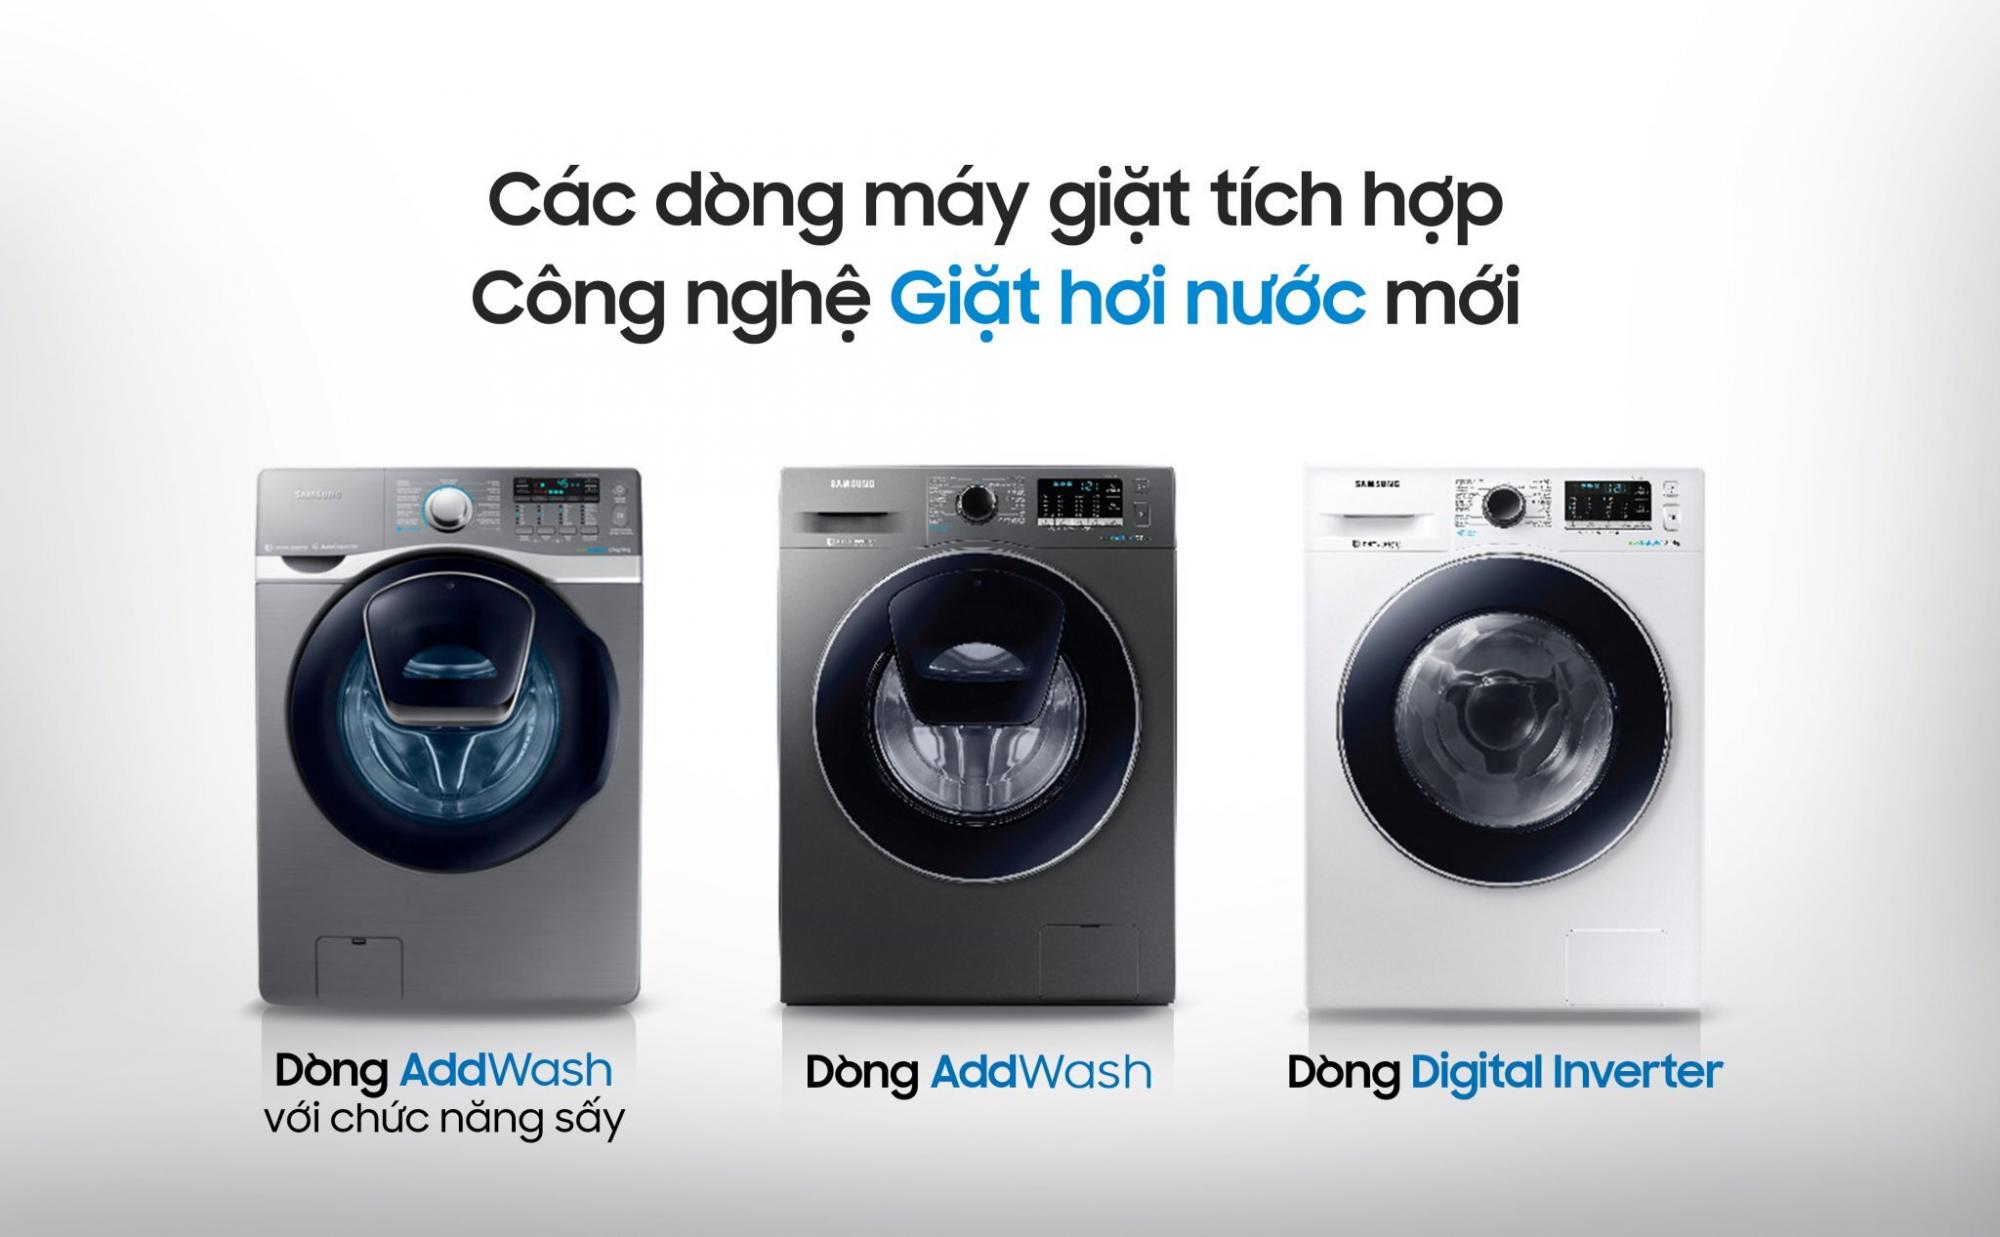 Các chức năng của máy giặt Samsung